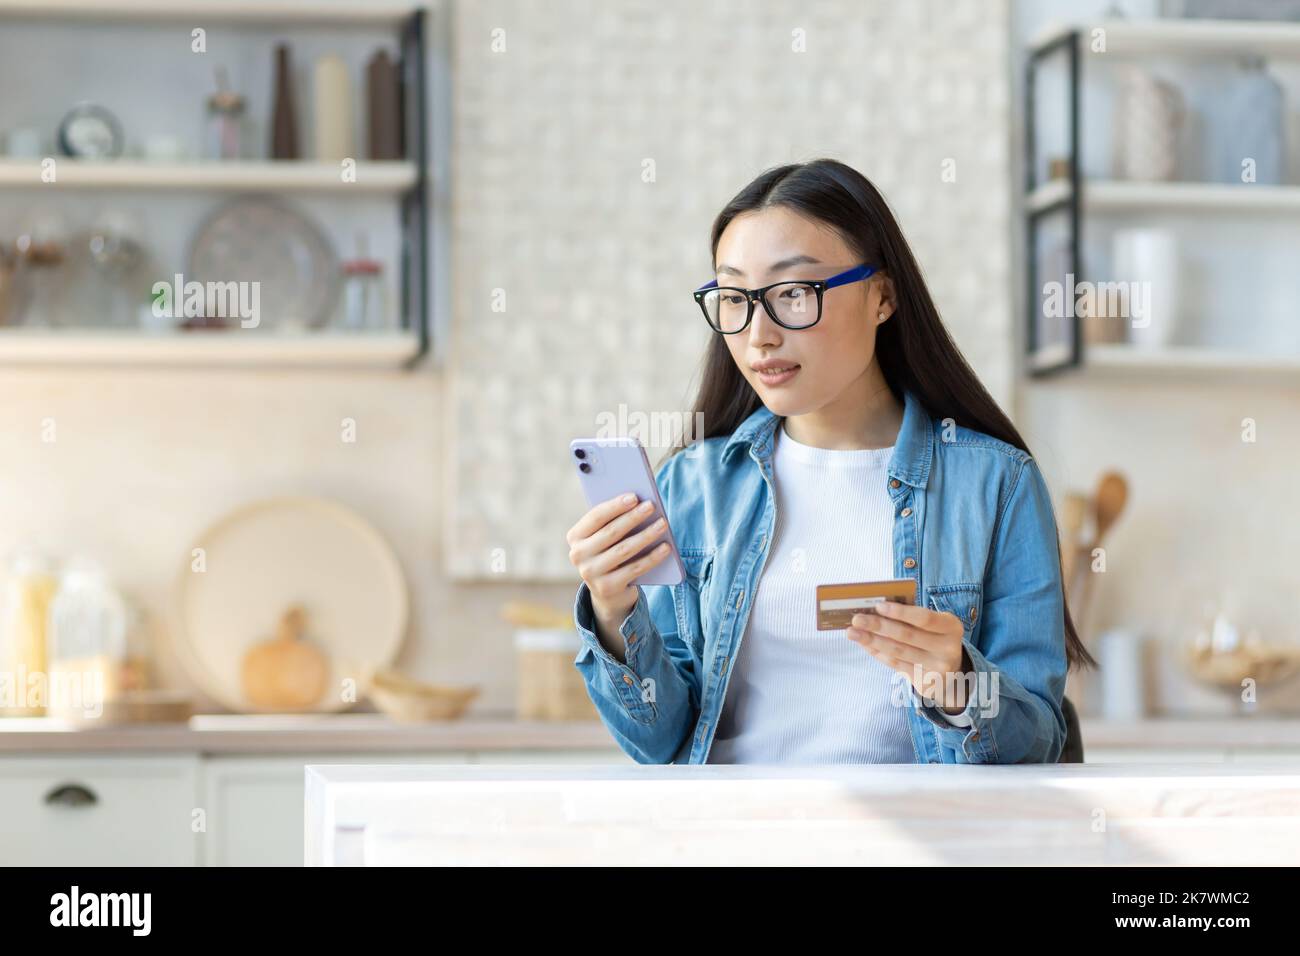 Problèmes financiers. Inquiète jeune femme asiatique tenant le téléphone et la carte de crédit. Assis dans la cuisine à la maison, essayant de résoudre un problème. Banque D'Images